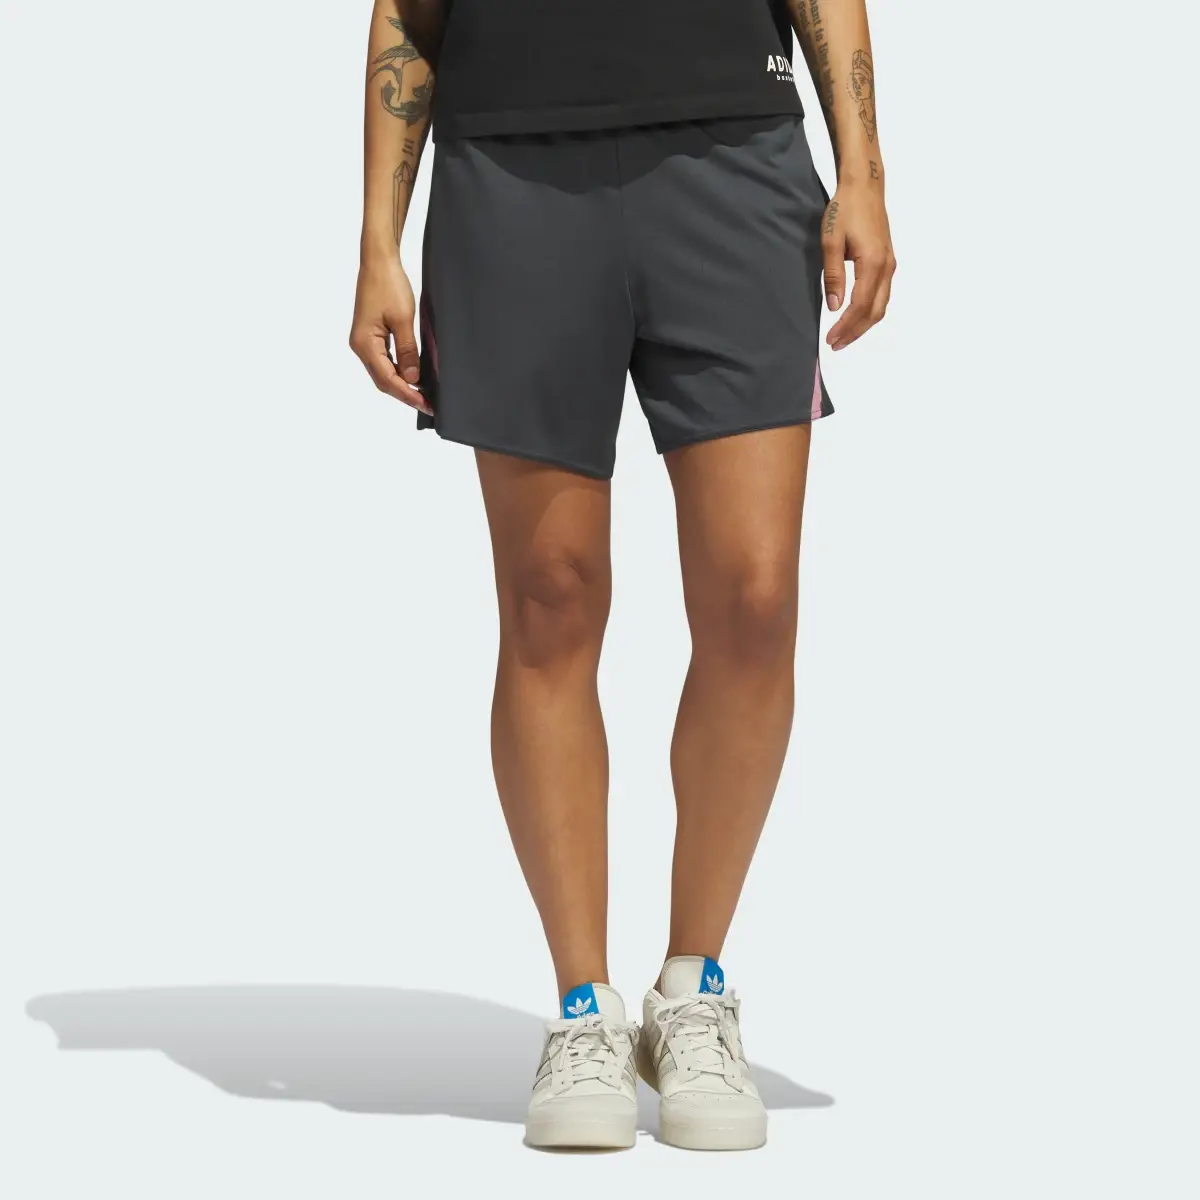 Adidas Select Basketball Shorts. 1